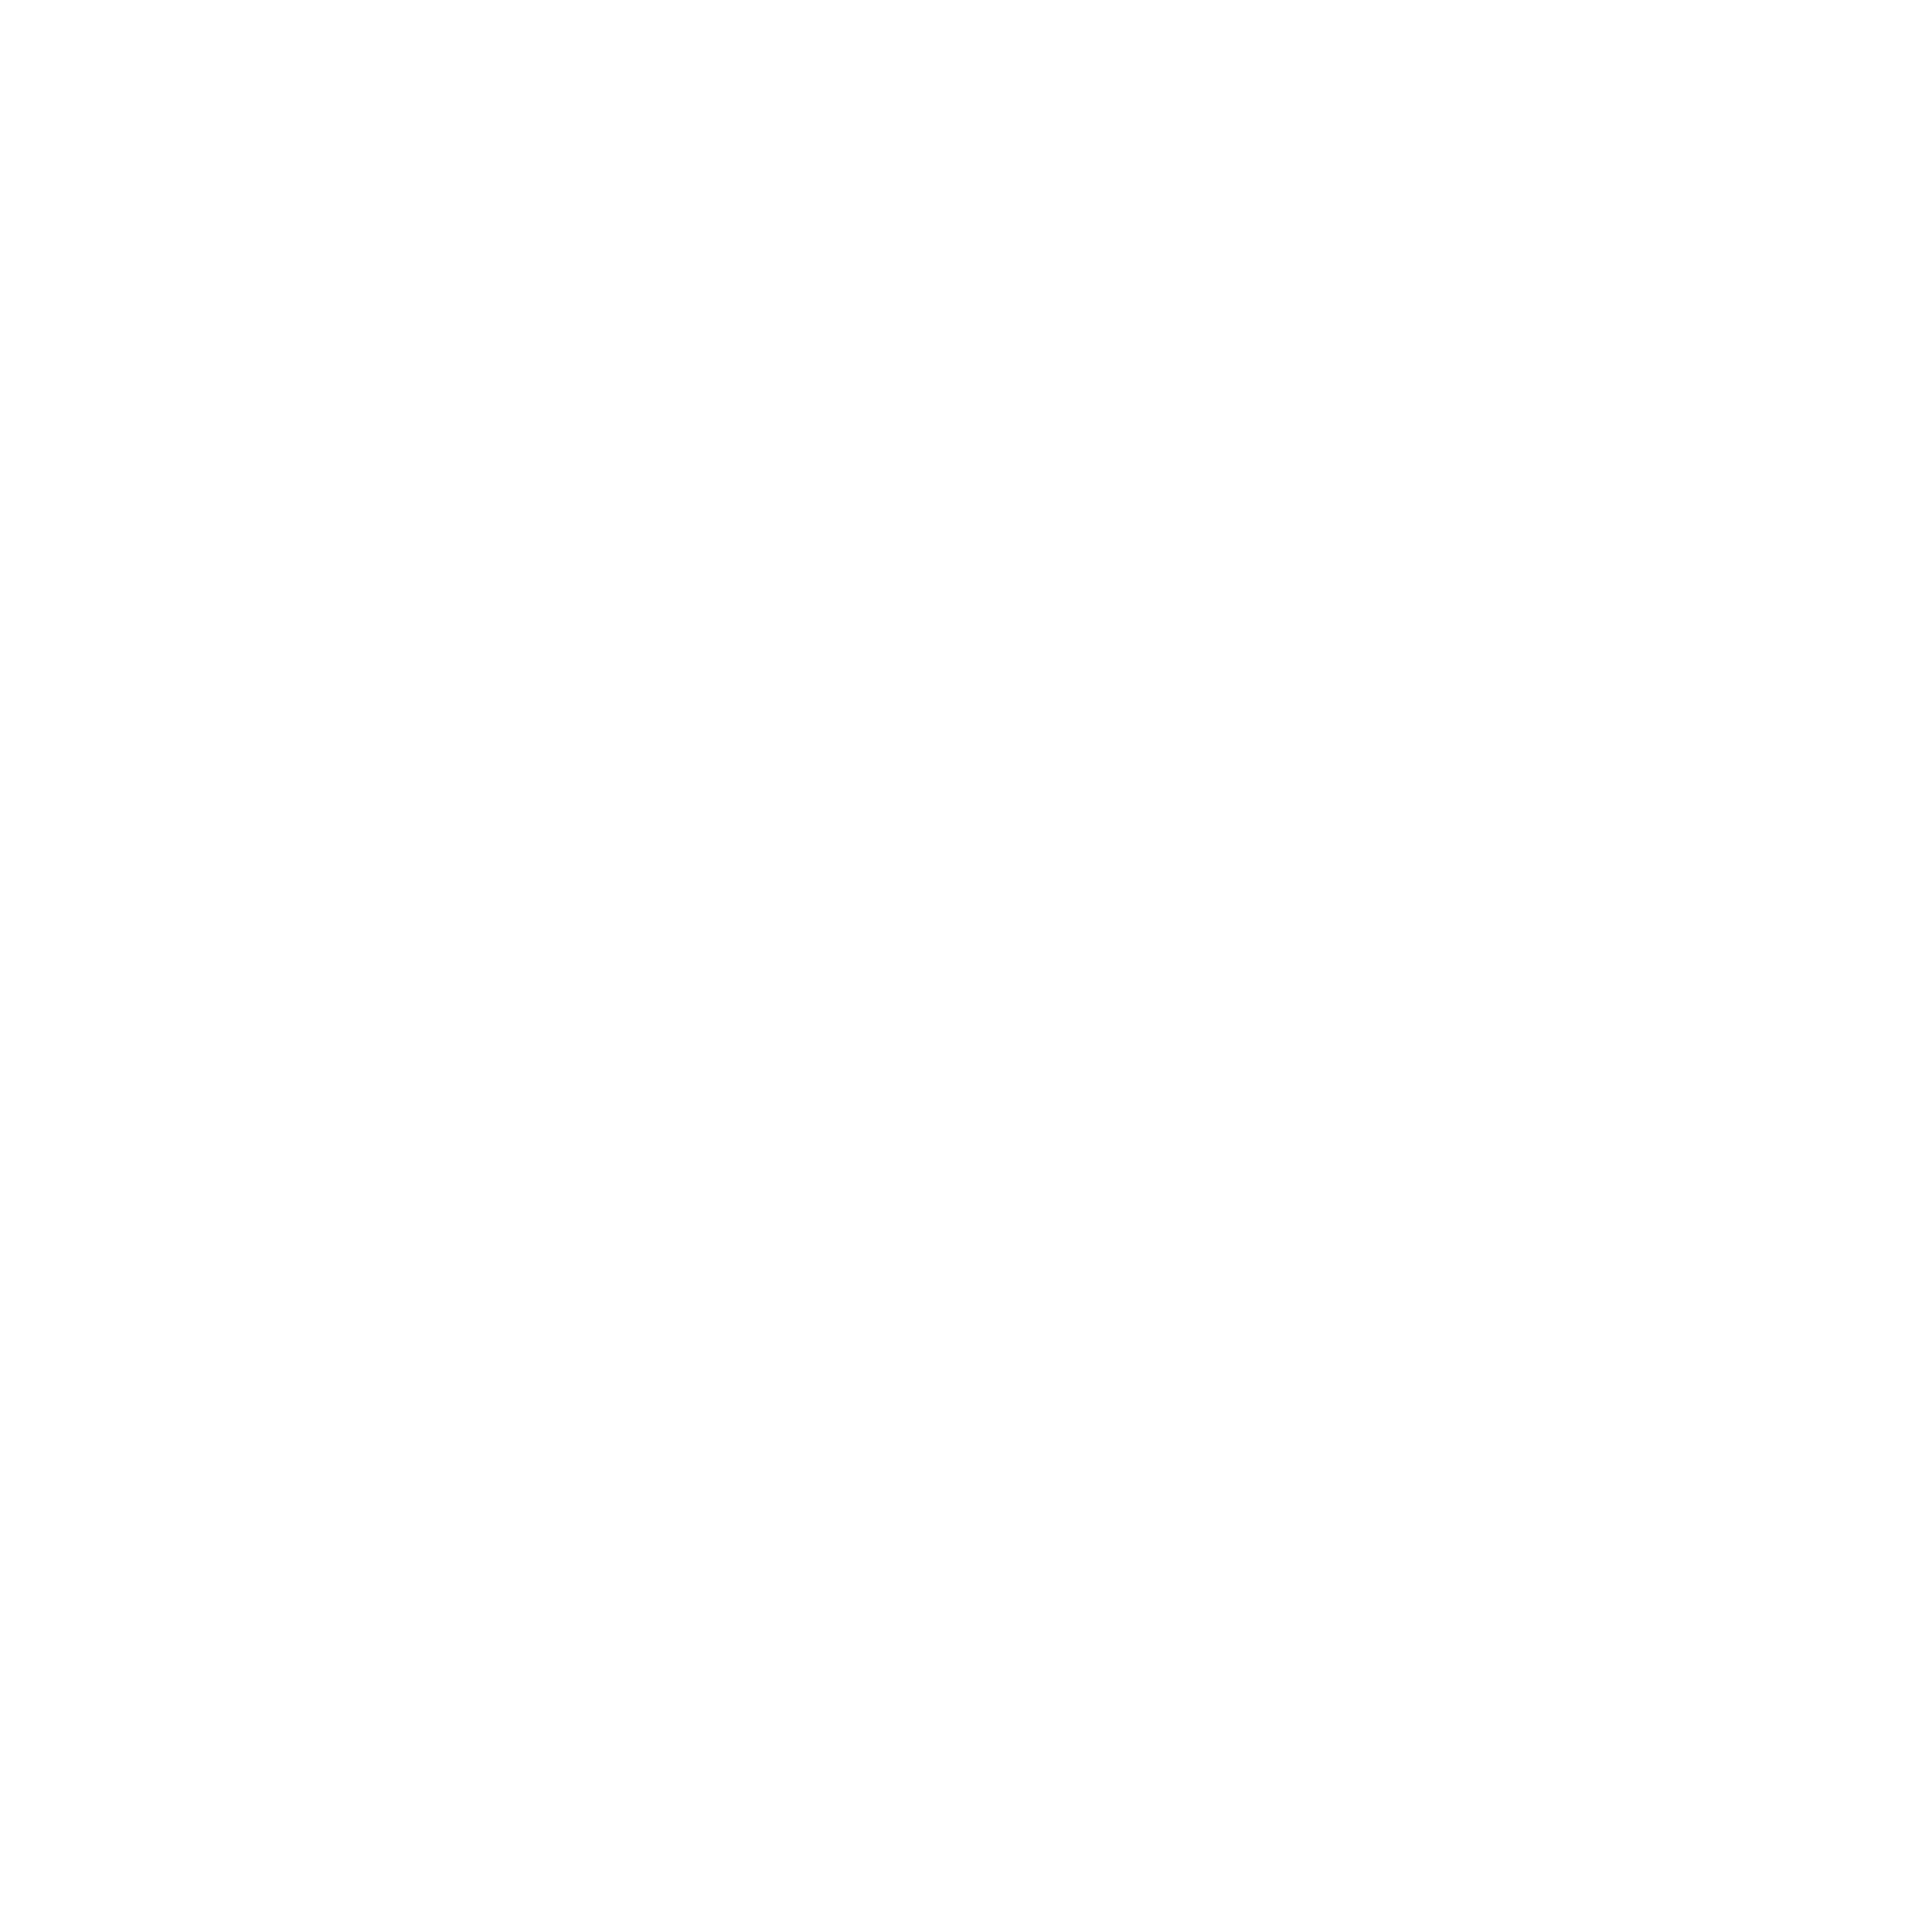 Marketing Teams